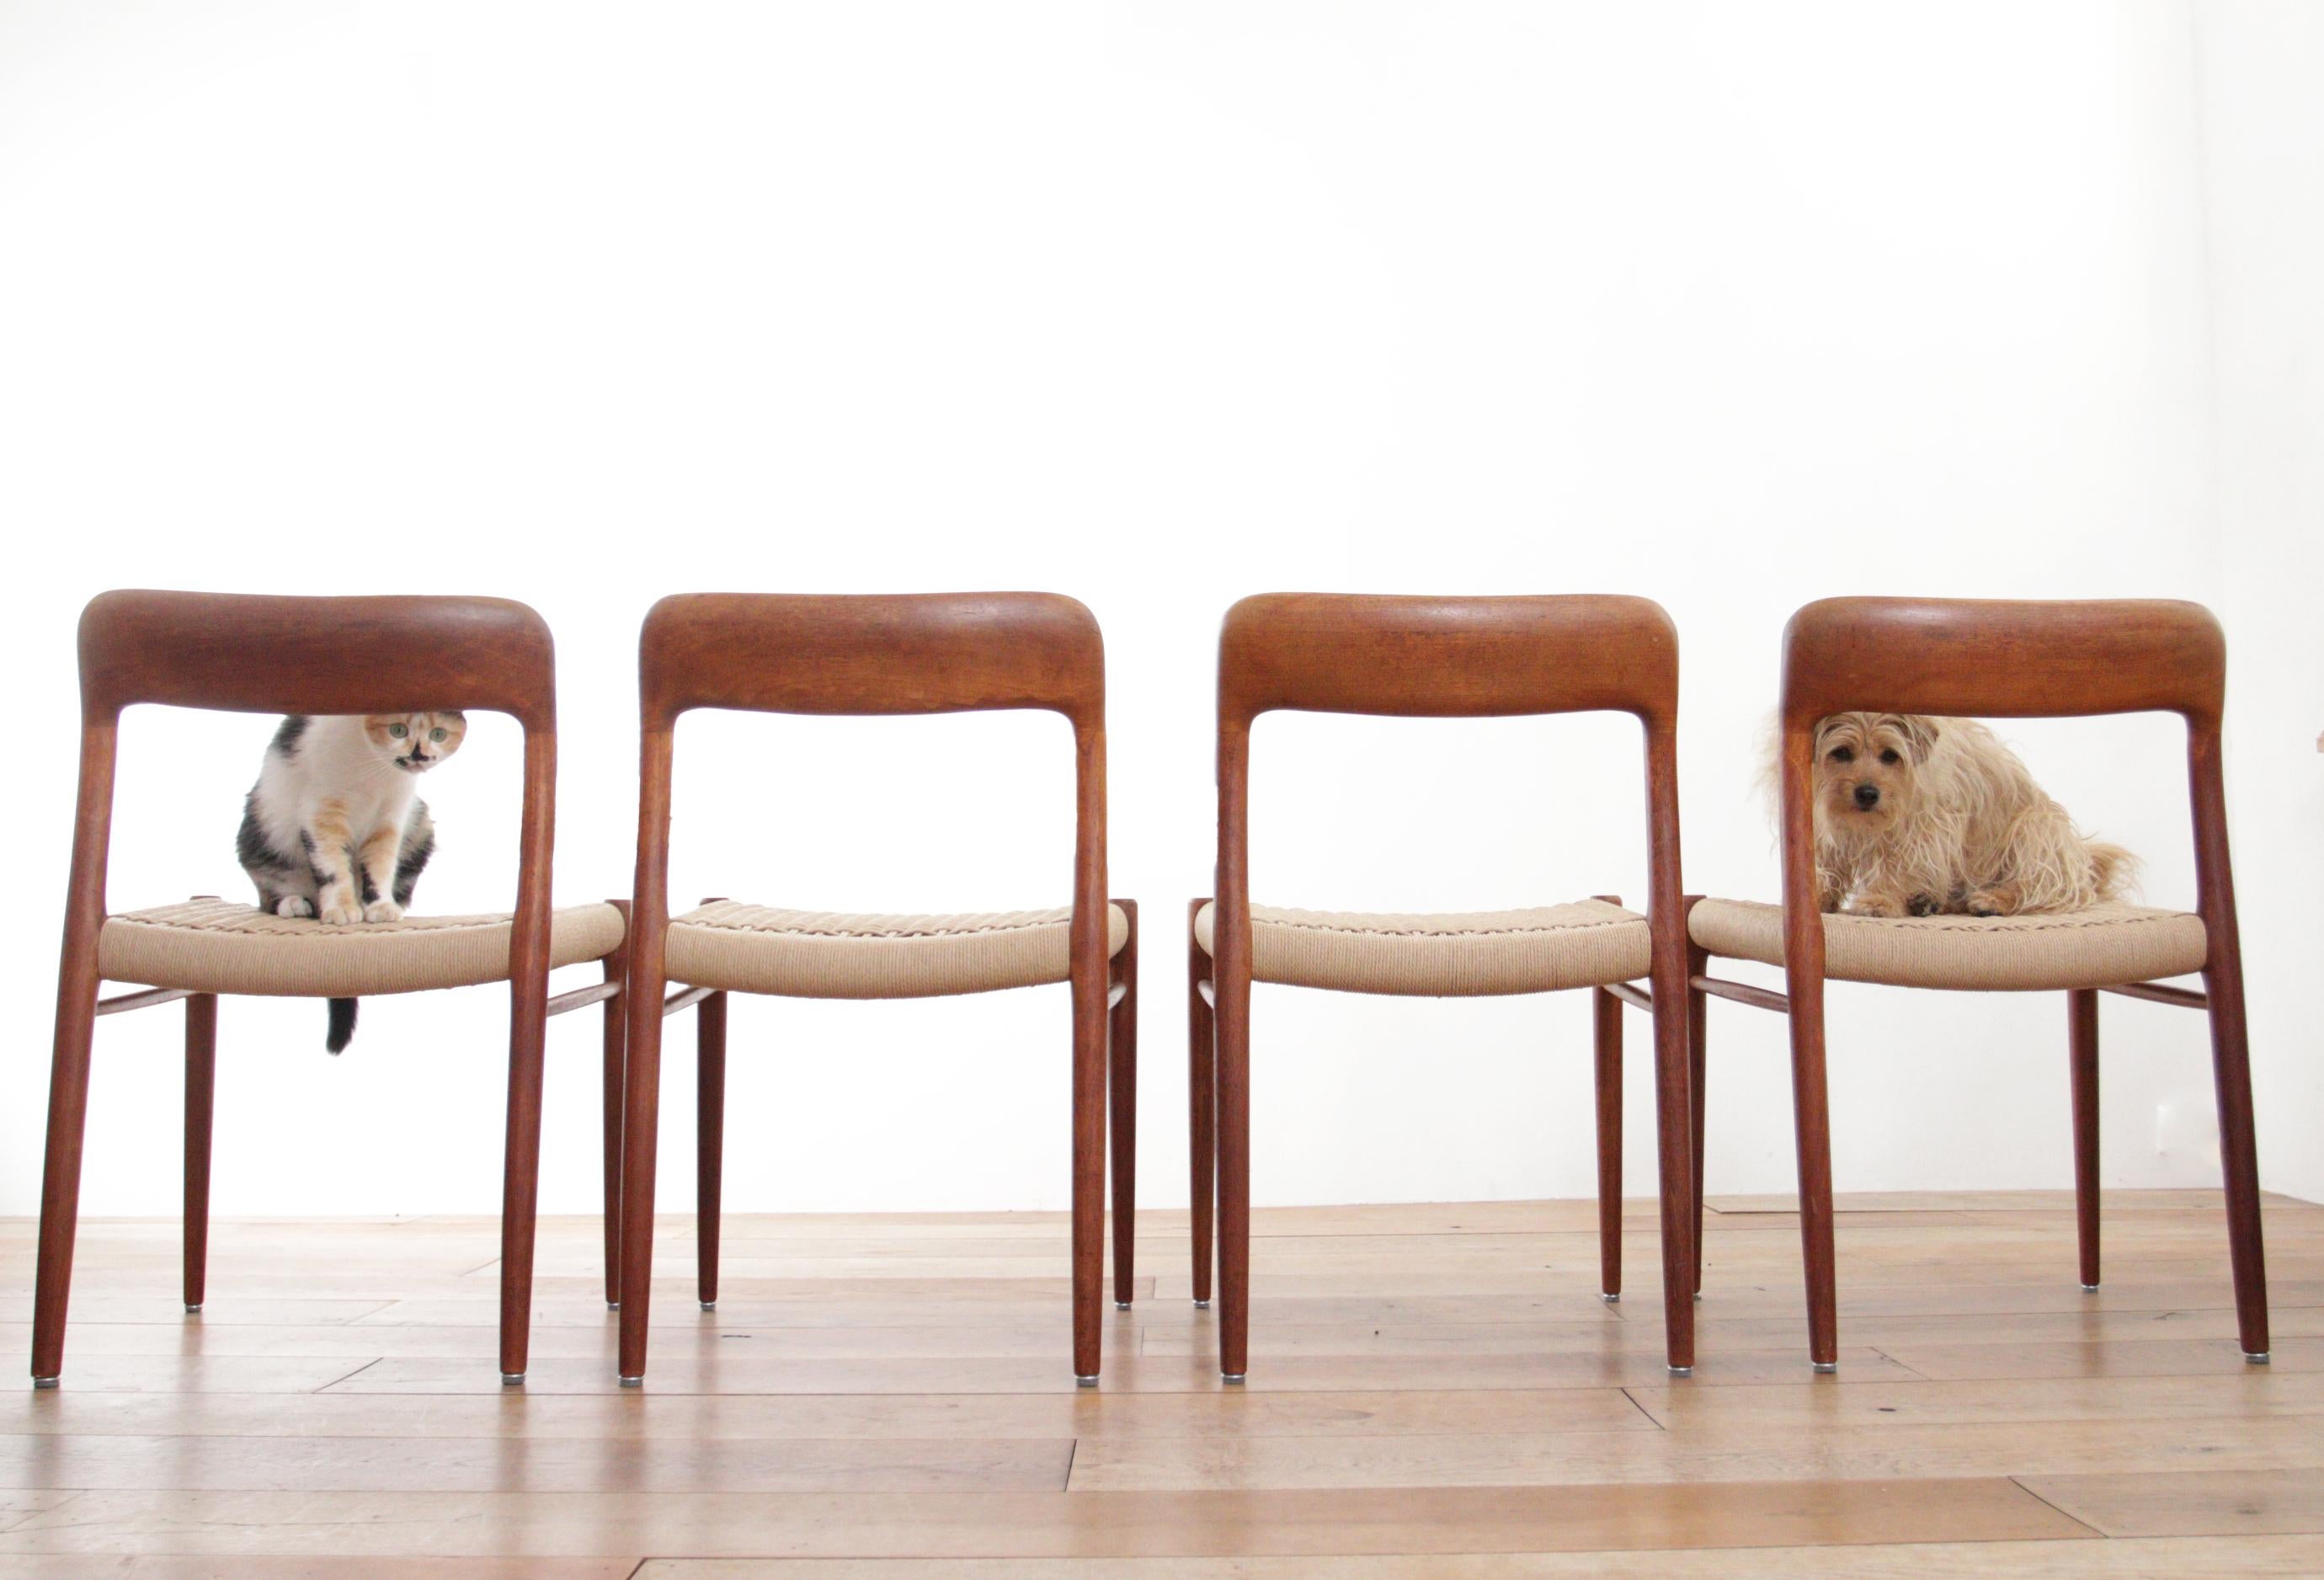 Magnifiques chaises entièrement restaurées, modèle 75, conçues par le designer danois Niels Otto Møller et fabriquées par JL Møllers Møbelfabrik dans les années 1960.
Les cadres sont en teck massif et le siège a été réaménagé avec de la corde en